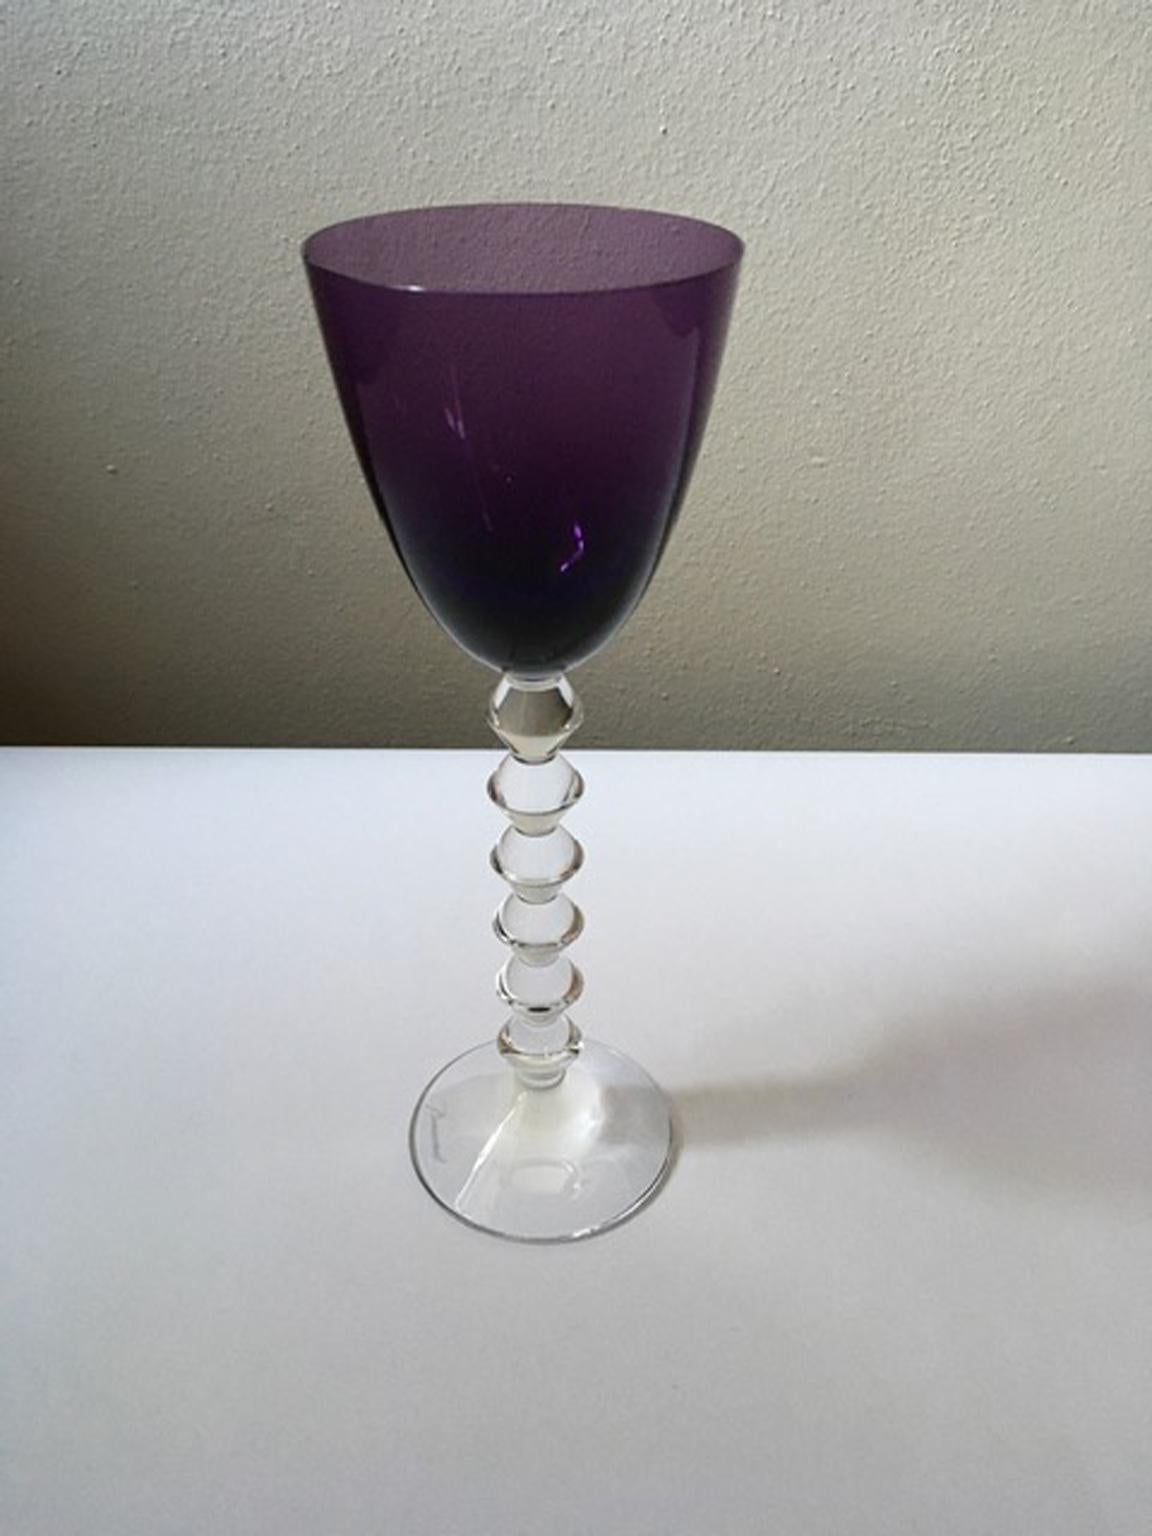 Baccarat Purple Crystal Goblet, France 7